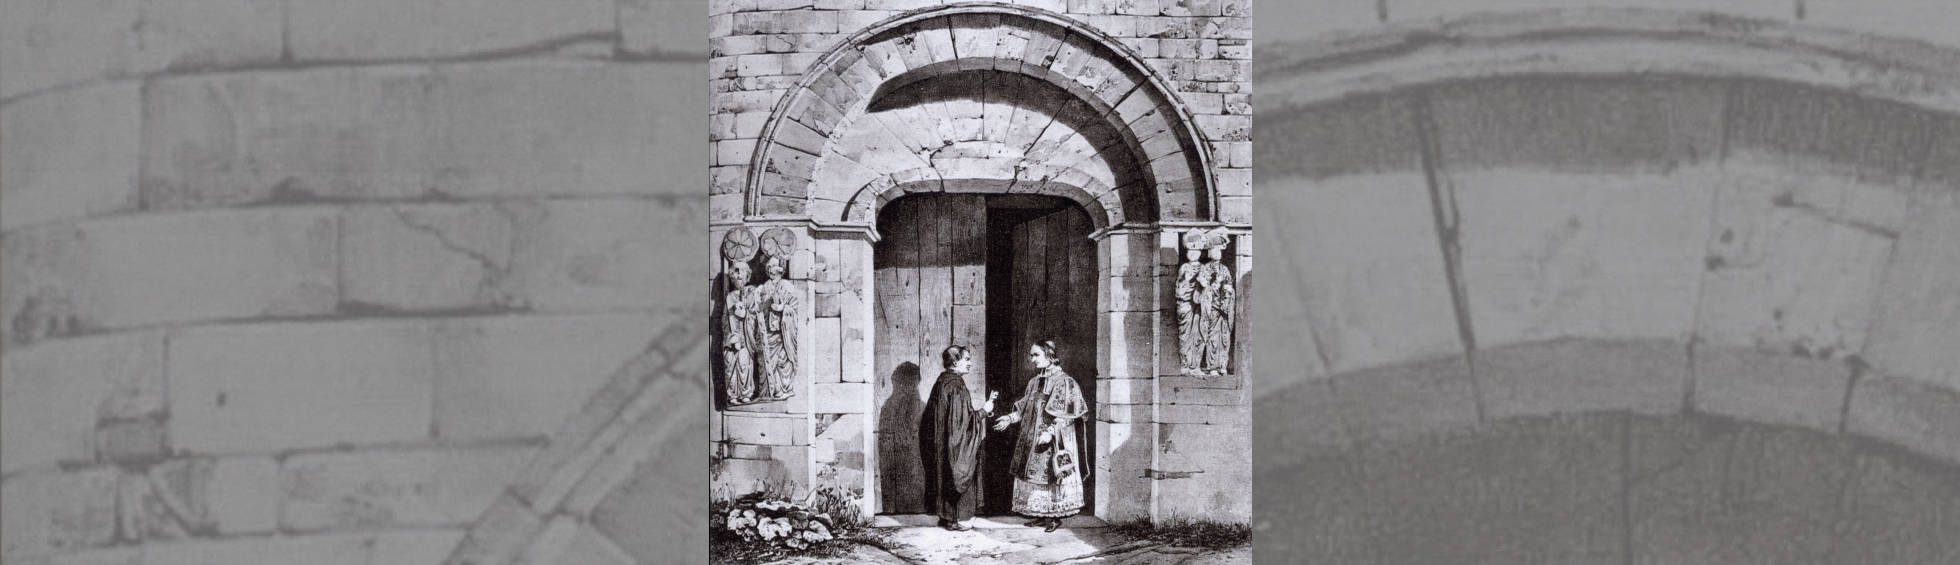 Gravure du portail encadré de4  statues de saints  , deux écclésiastiques en conversation devant la porte .